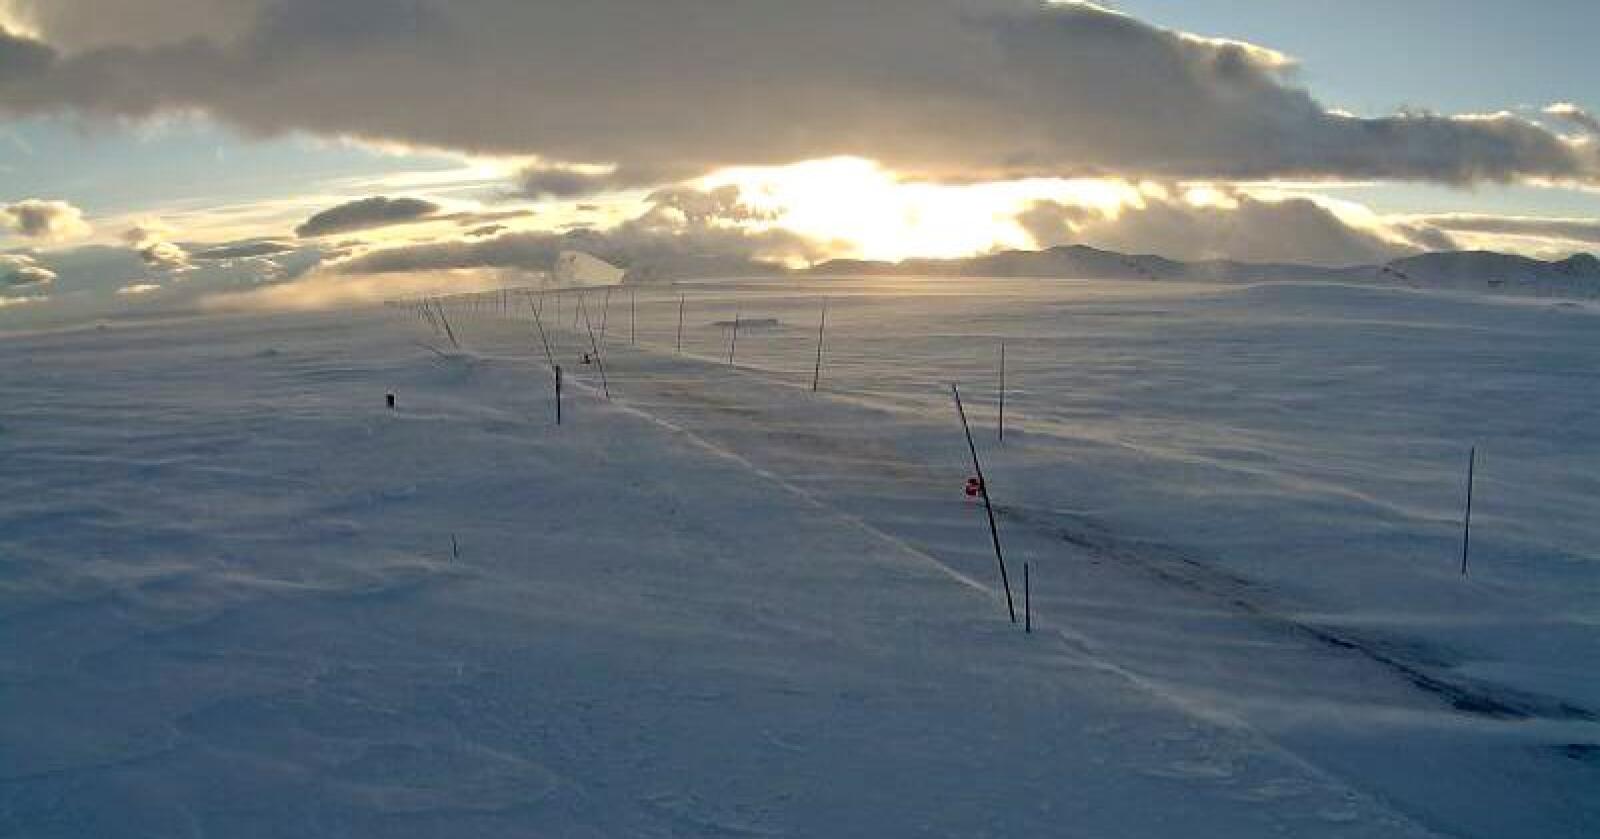 Flere fjelloverganger er nå vinterstengte. Fylkesvei 51 over Valdresflya ble i dag vinterstengt. Foto: Statensvegvesen / NTB scanpix.